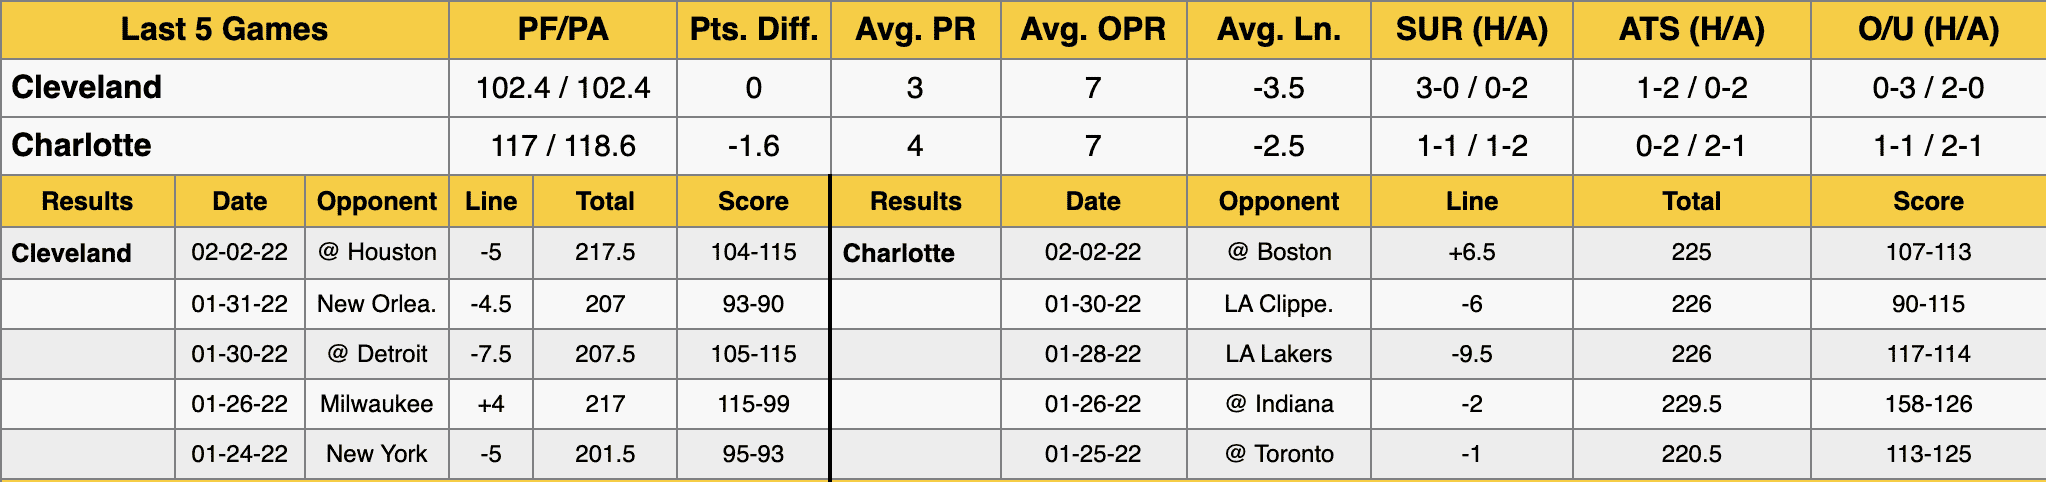 Cavaliers vs Hornets Data